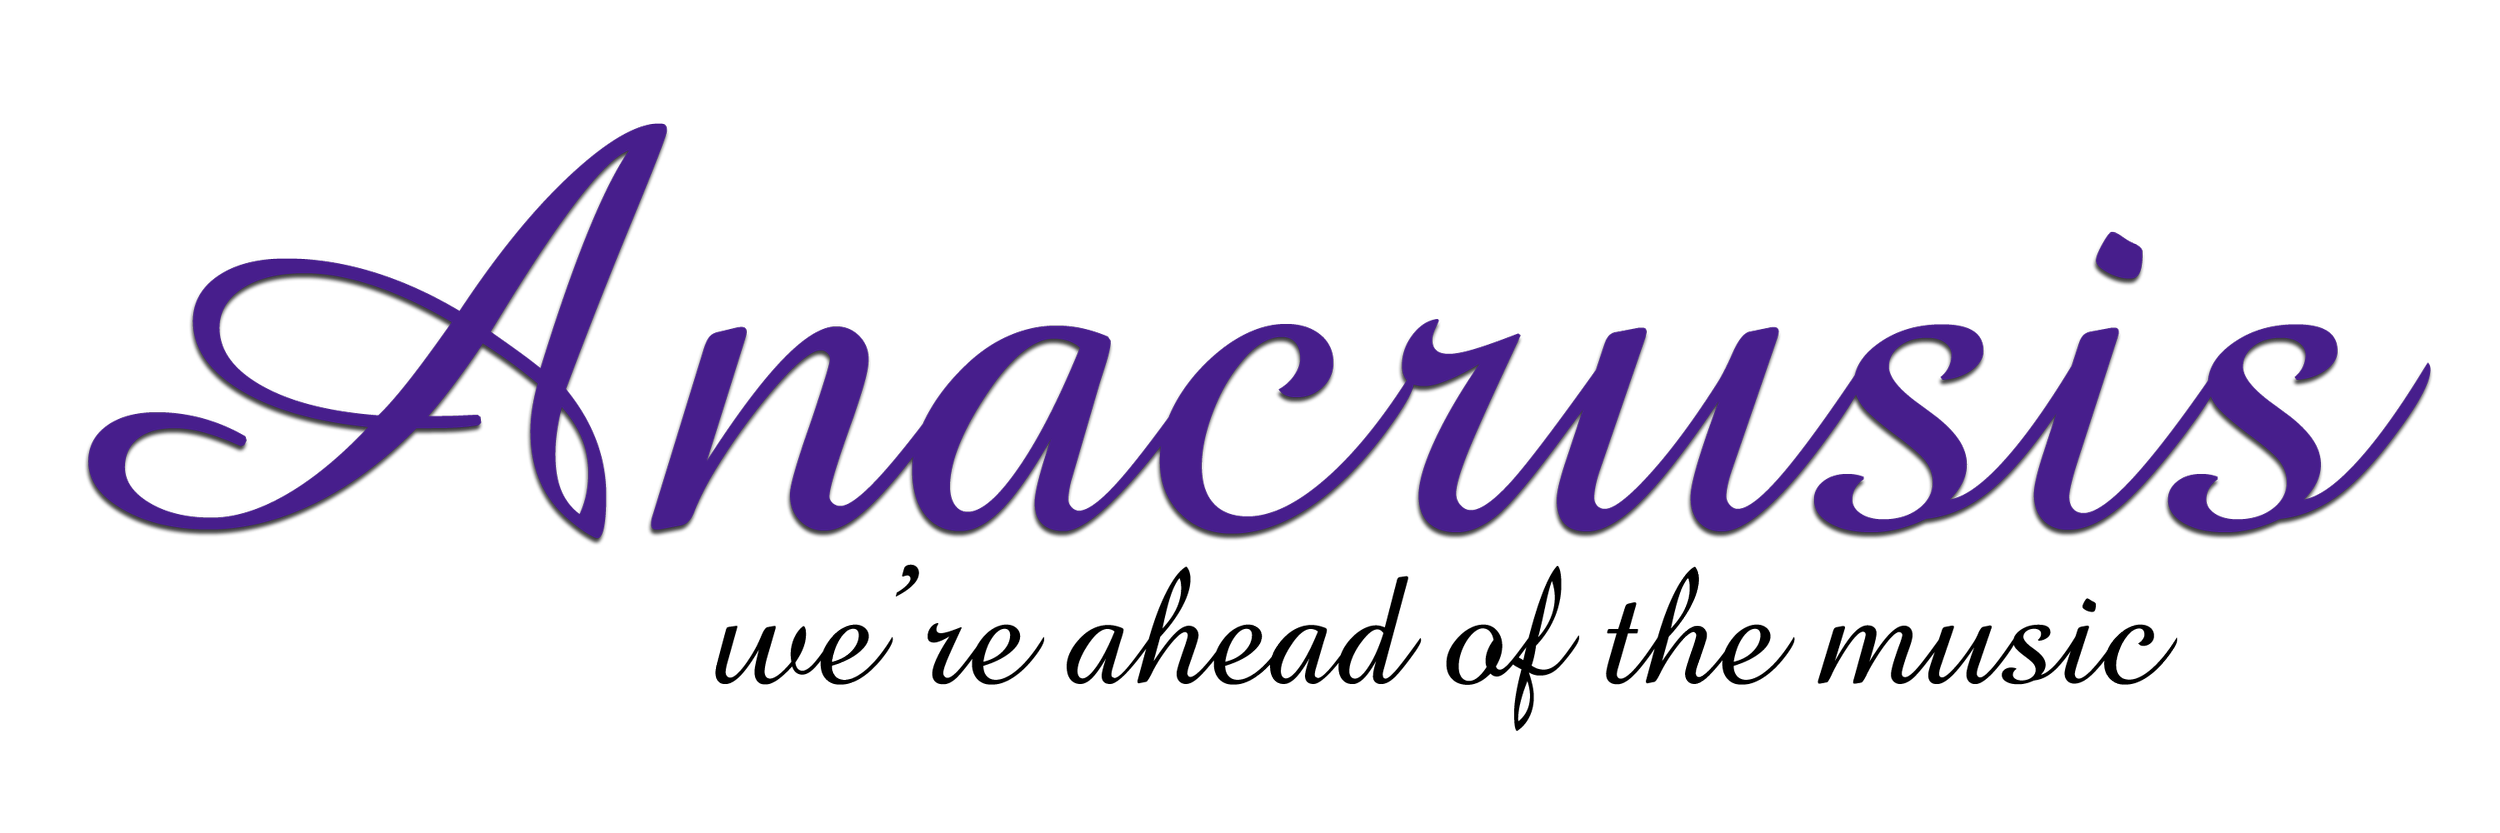 Anacrusis logo.png